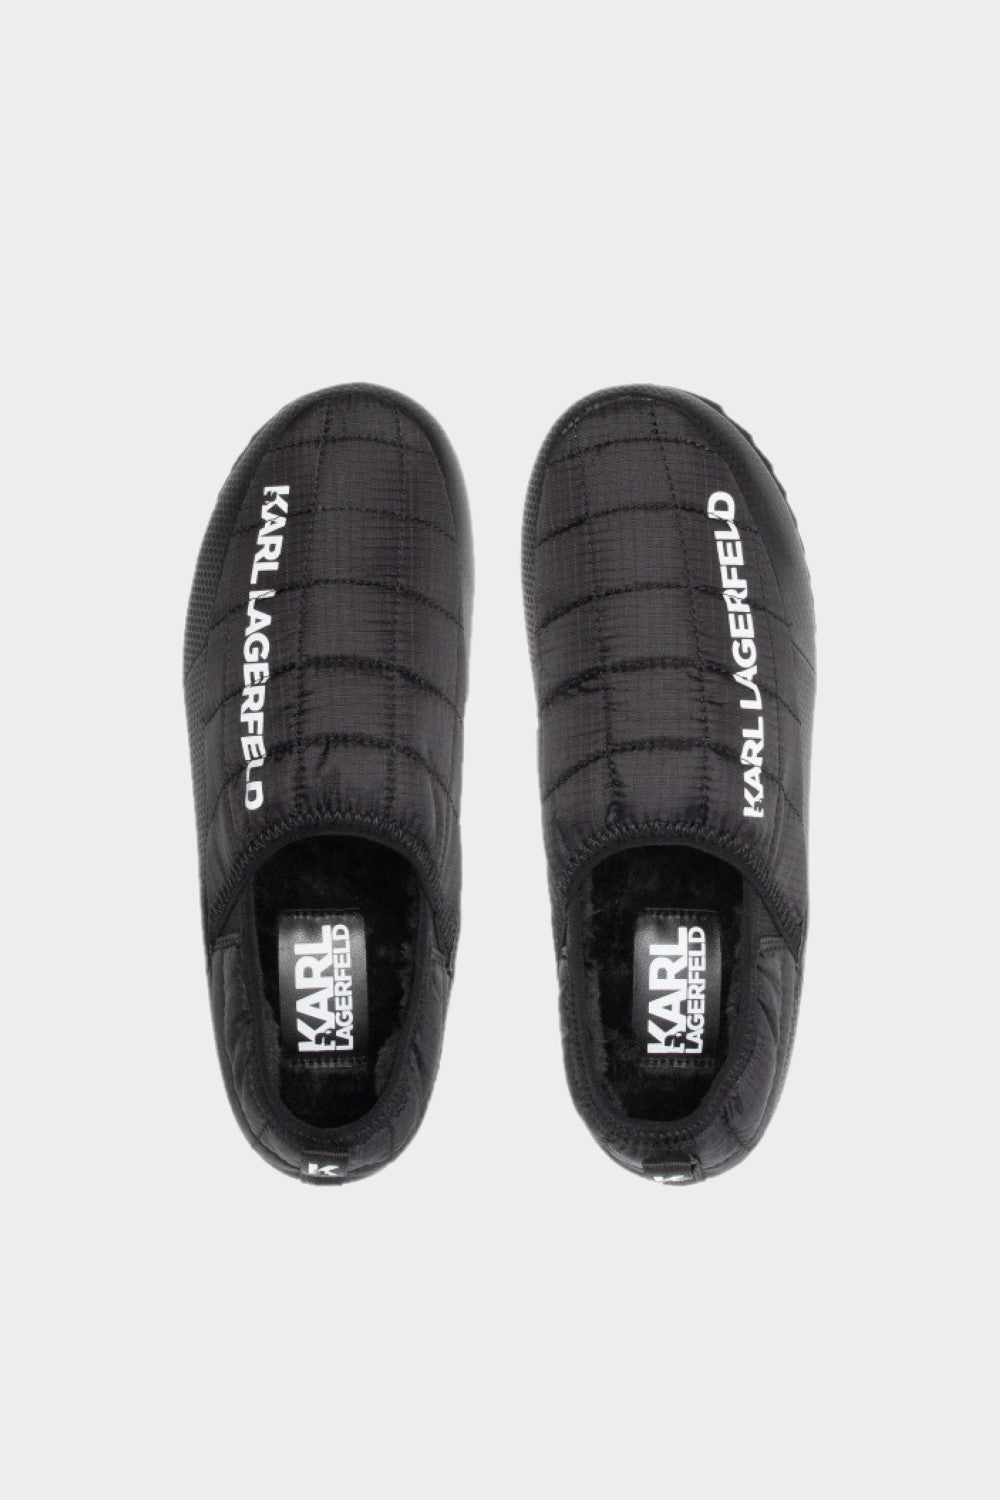 נעלי בית לגברים לוגו KARL LAGERFELD Vendome online | ונדום .